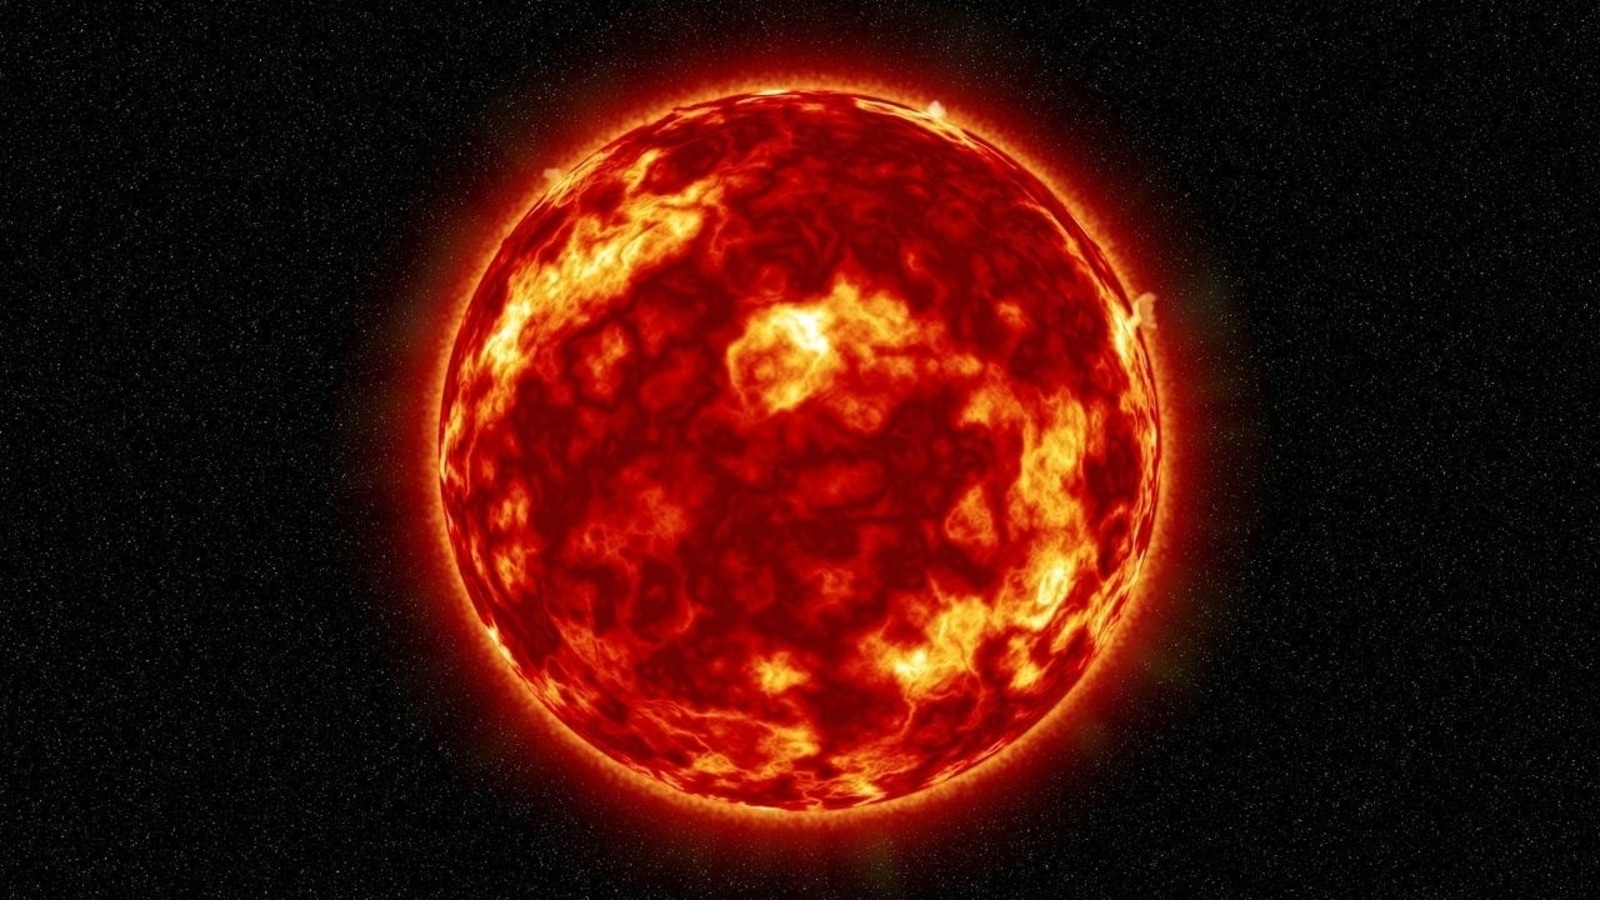 La NASA affirme qu’une éruption de filaments magnétiques sur le soleil pourrait déclencher une tempête solaire demain